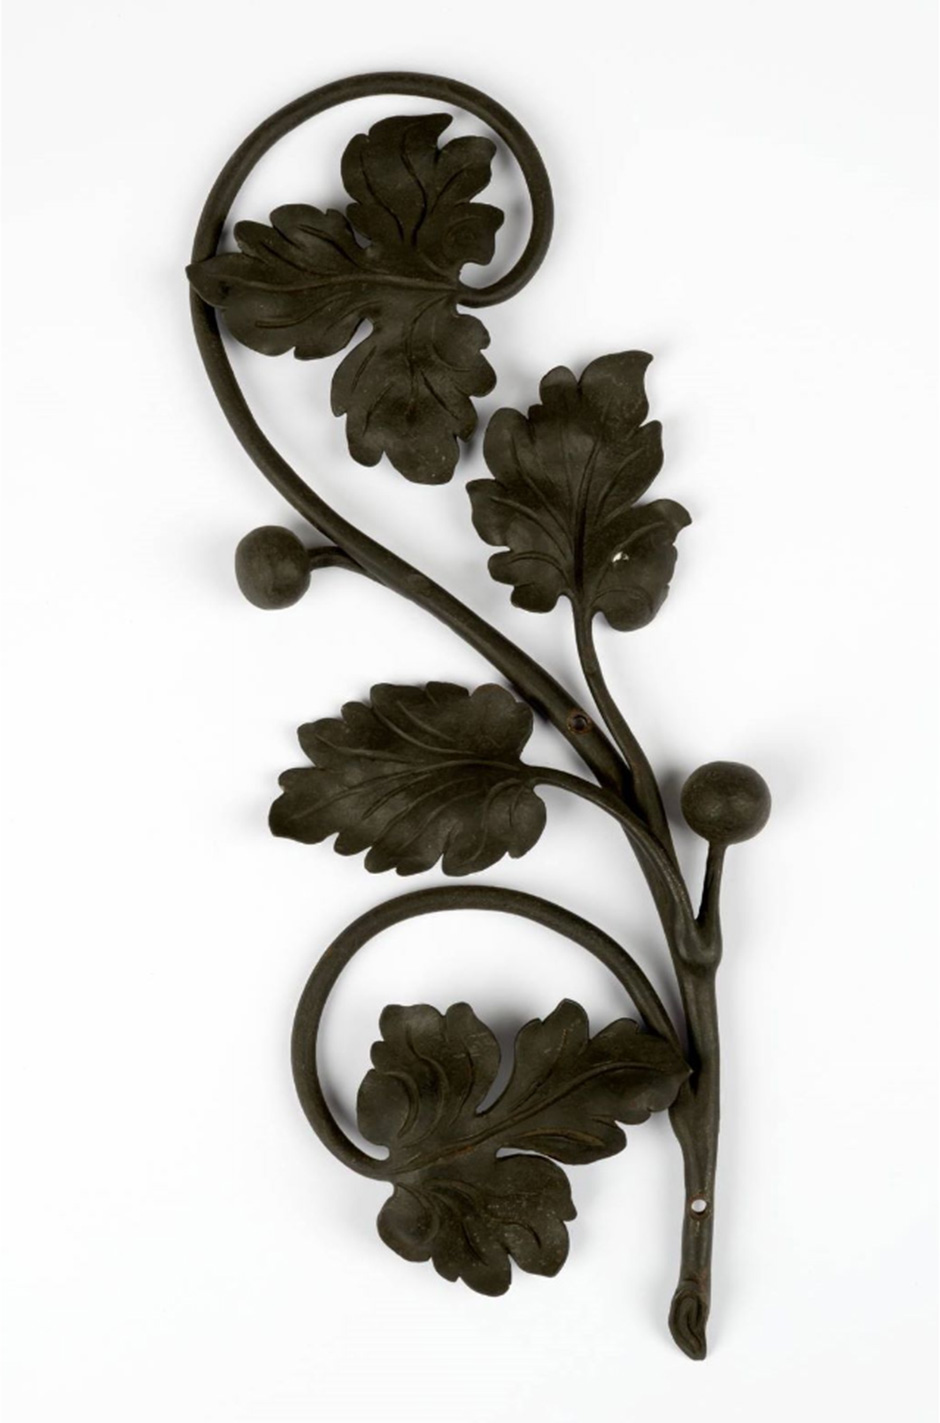 MAK Archivbild 98: Zierstück Zweig mit Blättern und Früchten, Eisen geschwärzt, HxB 28x11 cm, 1867 bis 1900